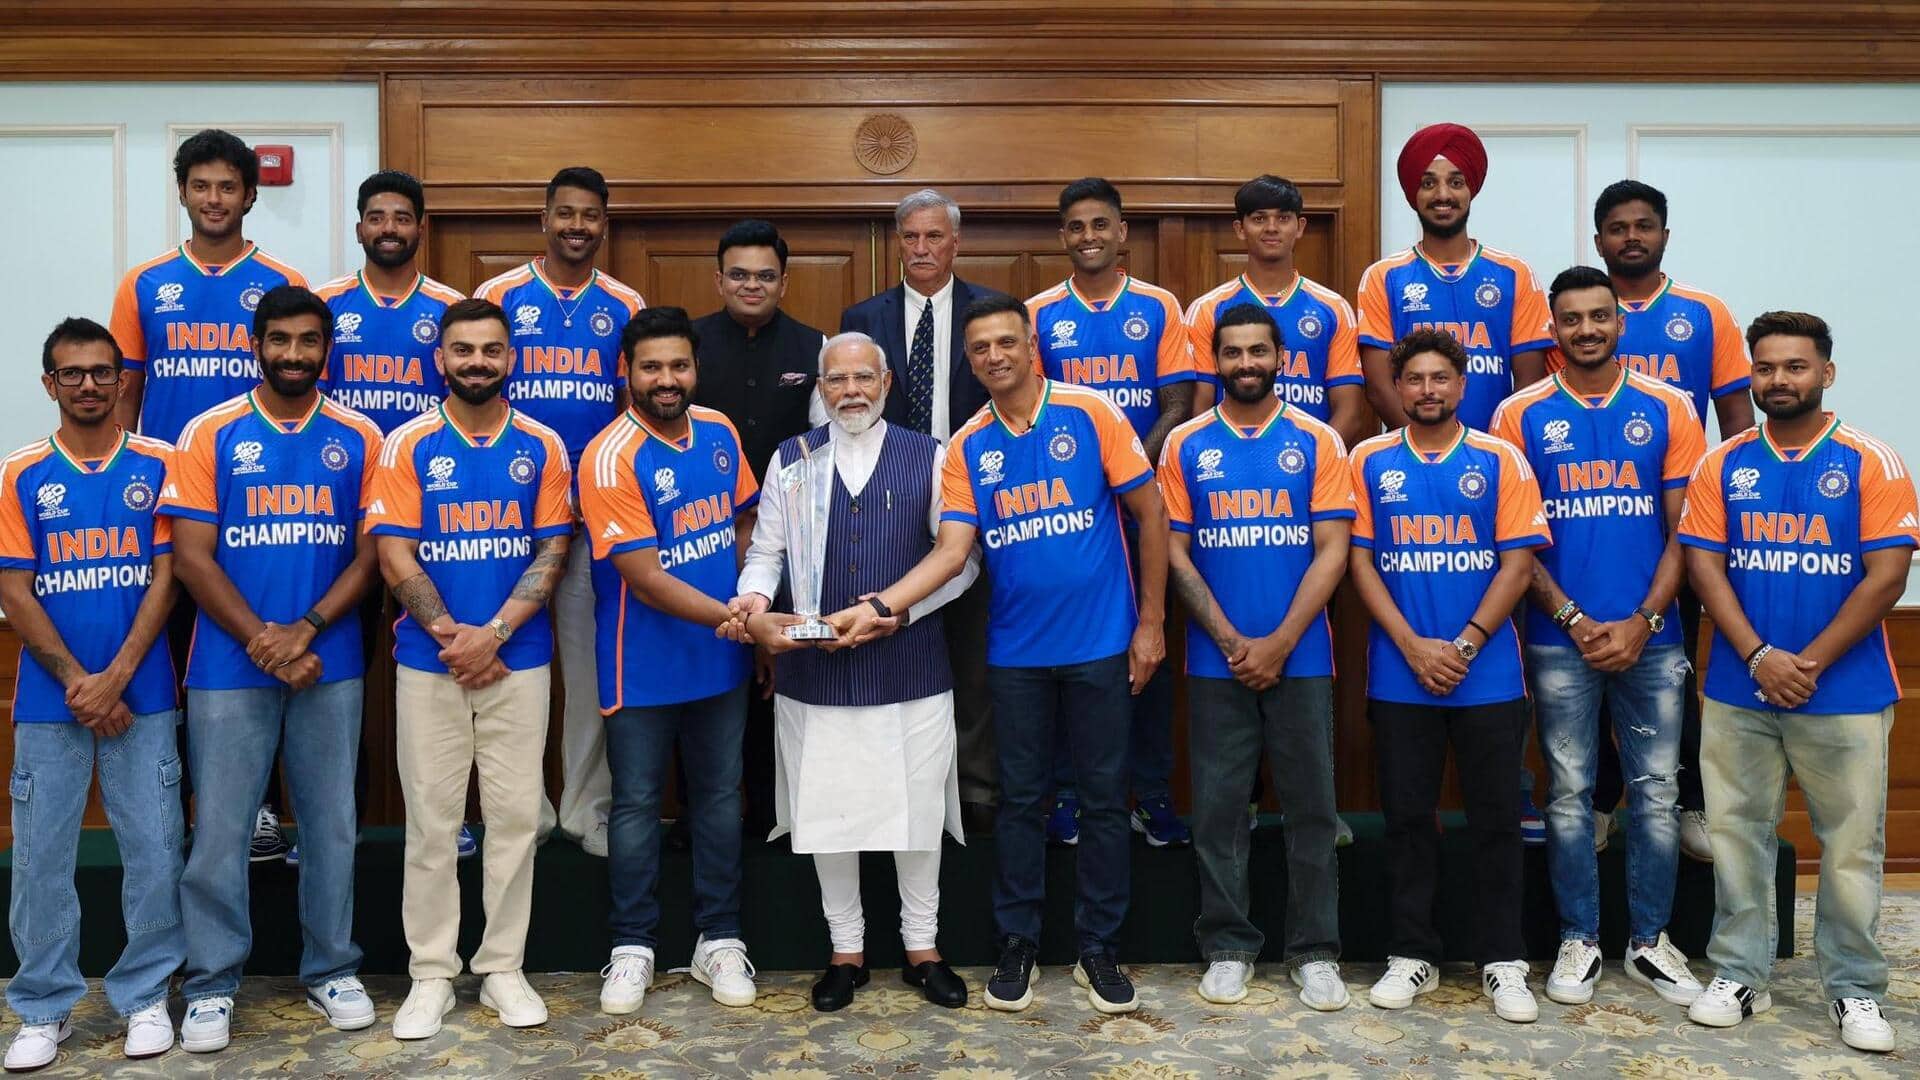 प्रधानमंत्री नरेंद्र मोदी ने टी-20 विश्व कप की ट्रॉफी को हाथ नहीं लगाया, आखिर क्यों? 